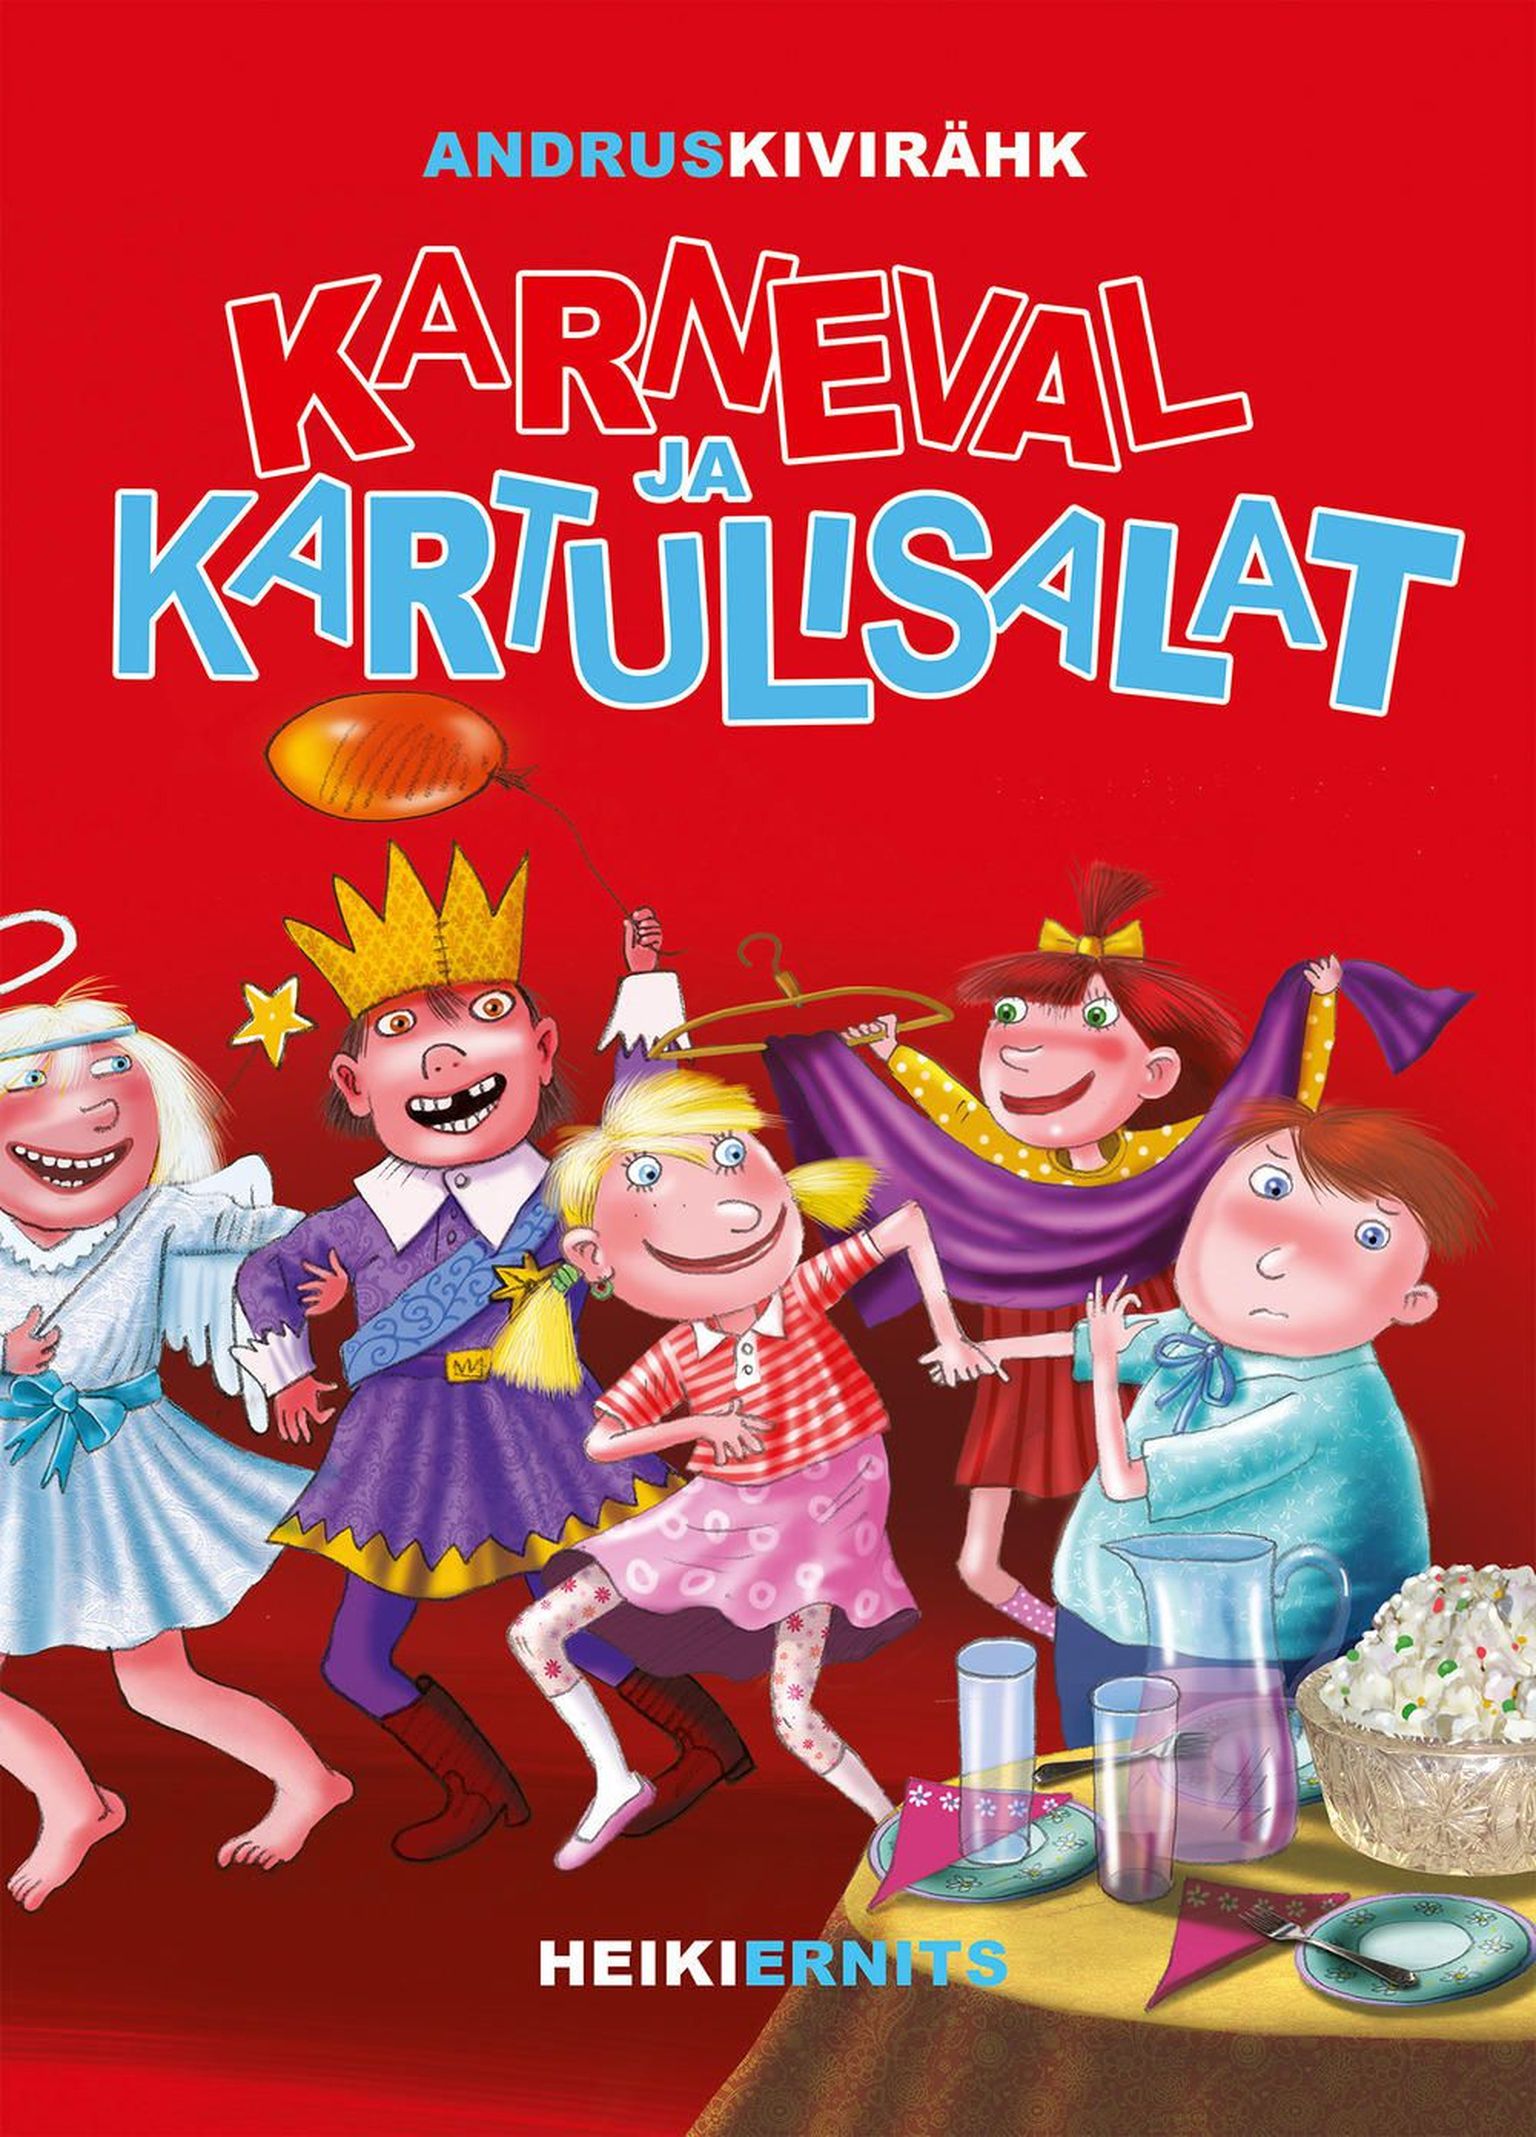 Andrus Kivirähk "Karneval ja kartulisalat"